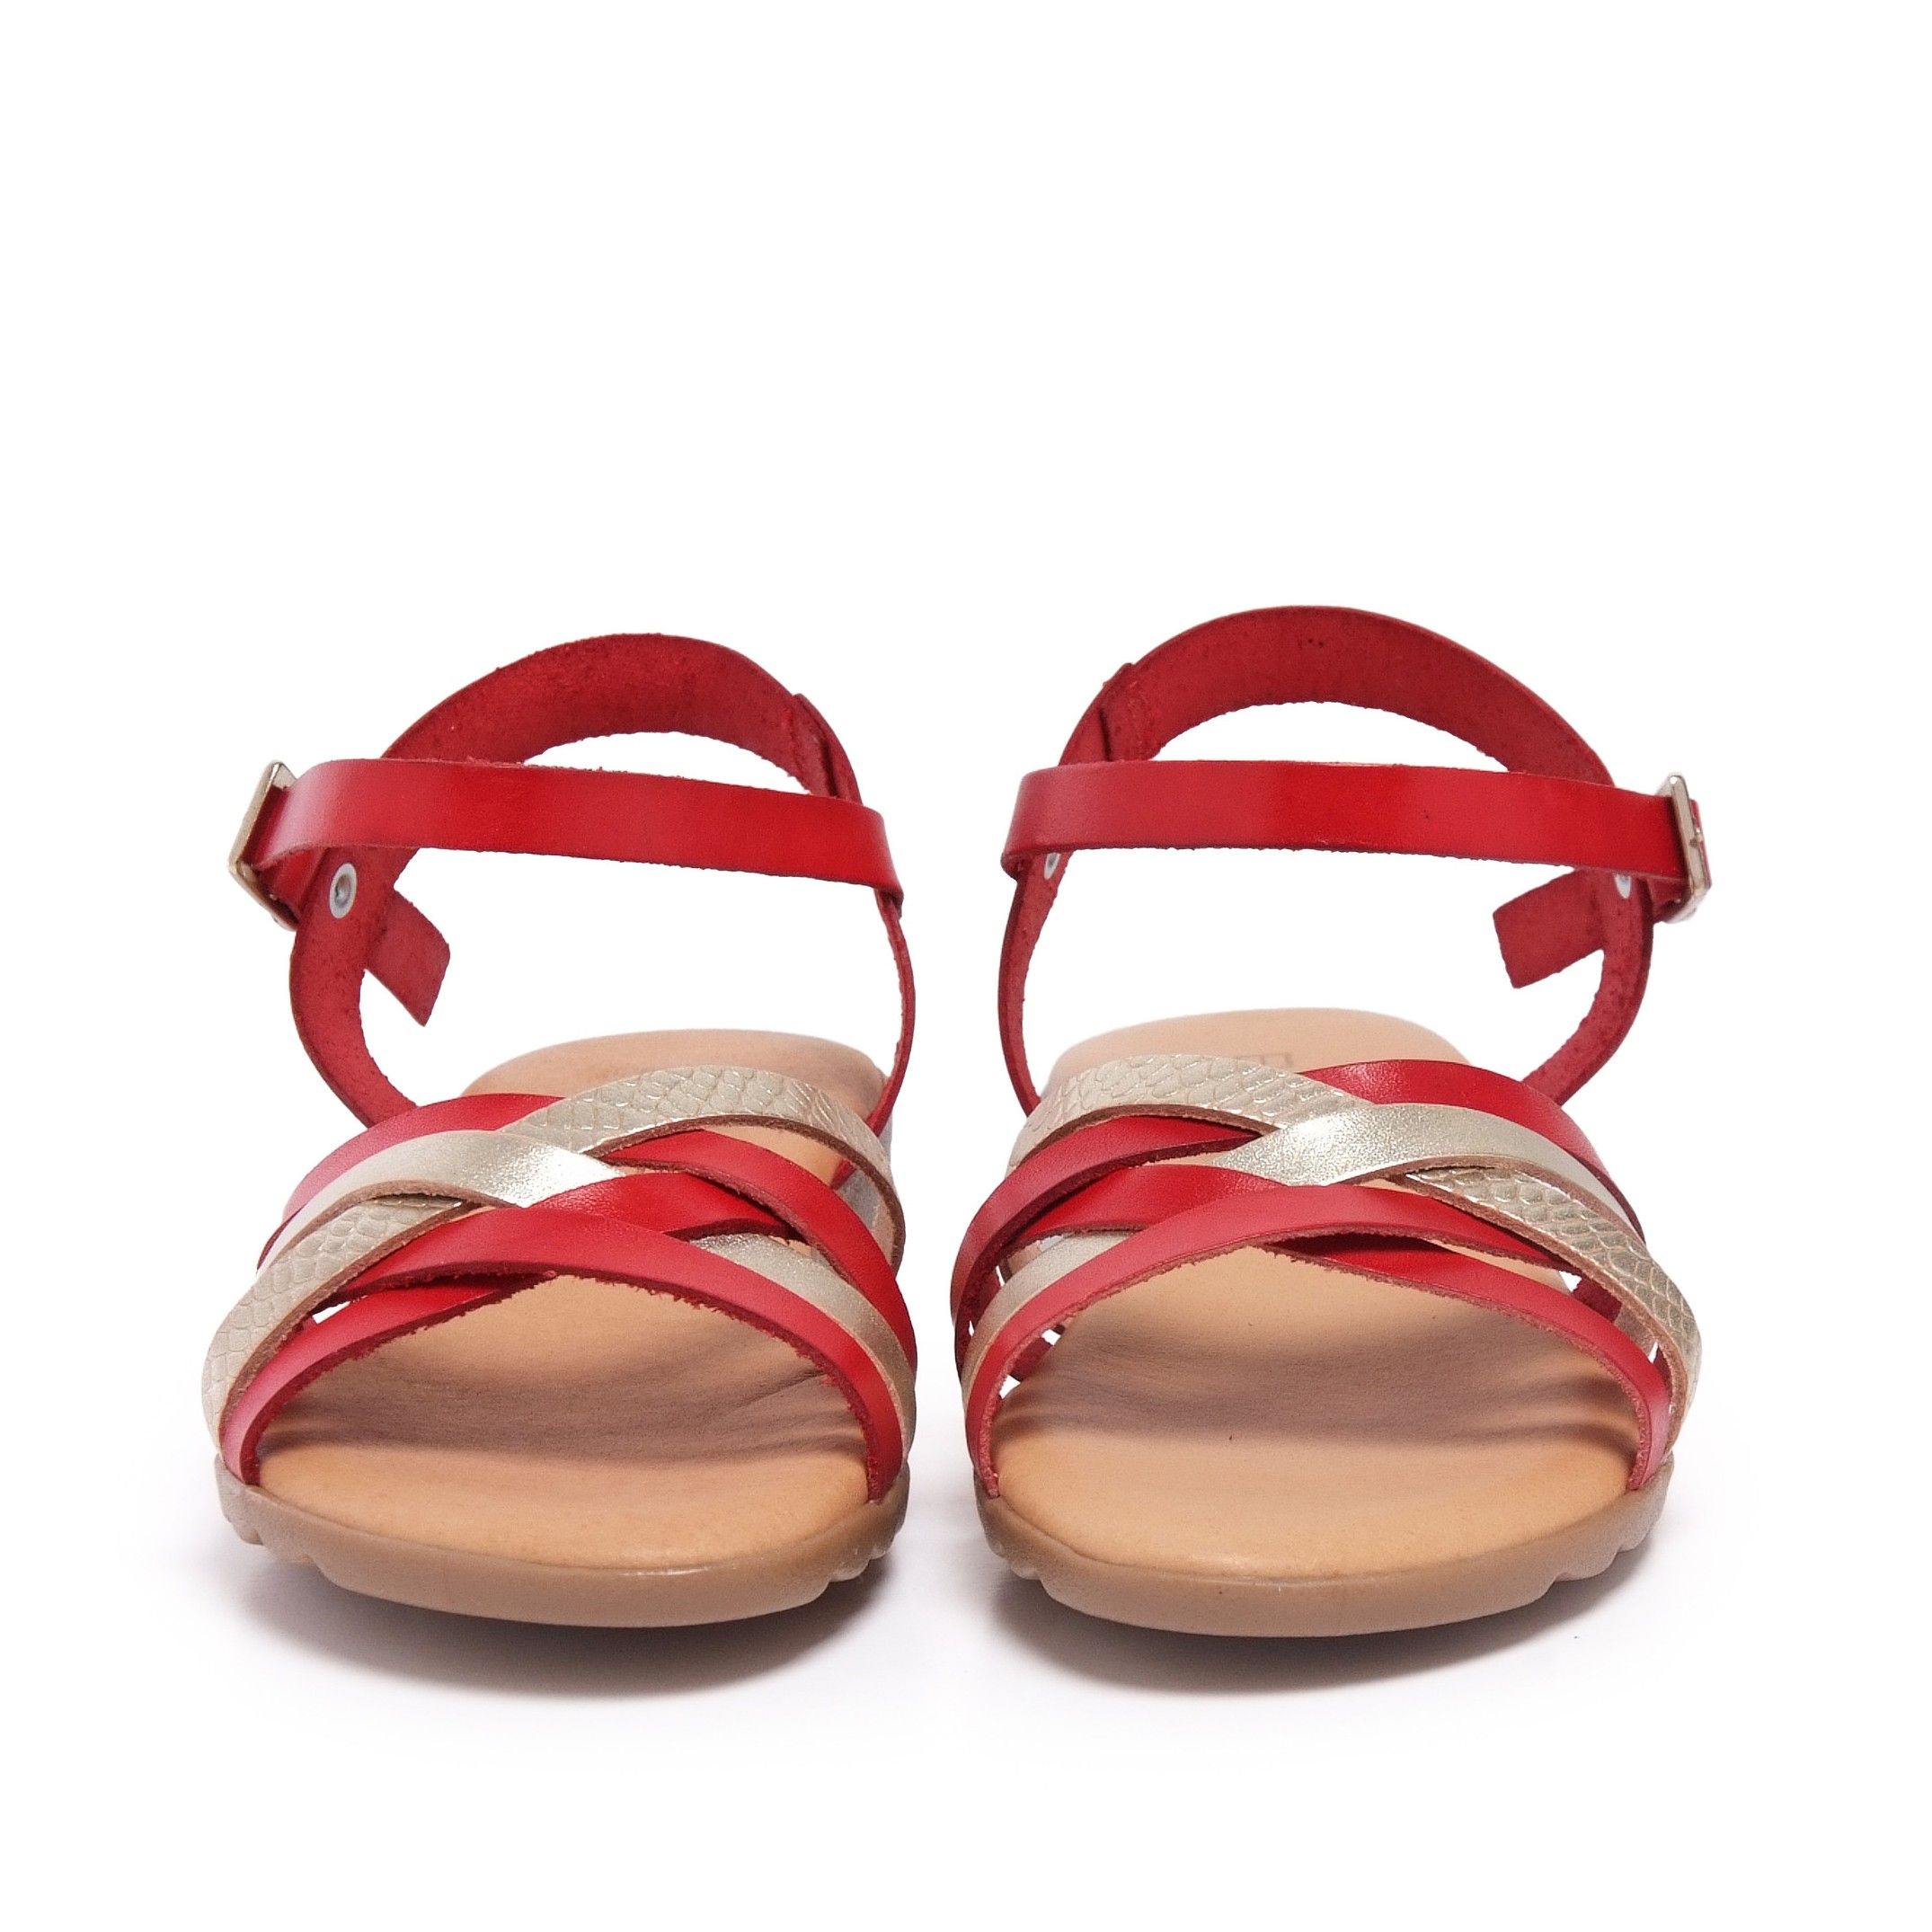 Red Leather Sandals Flip Flop Women Eva Lopez